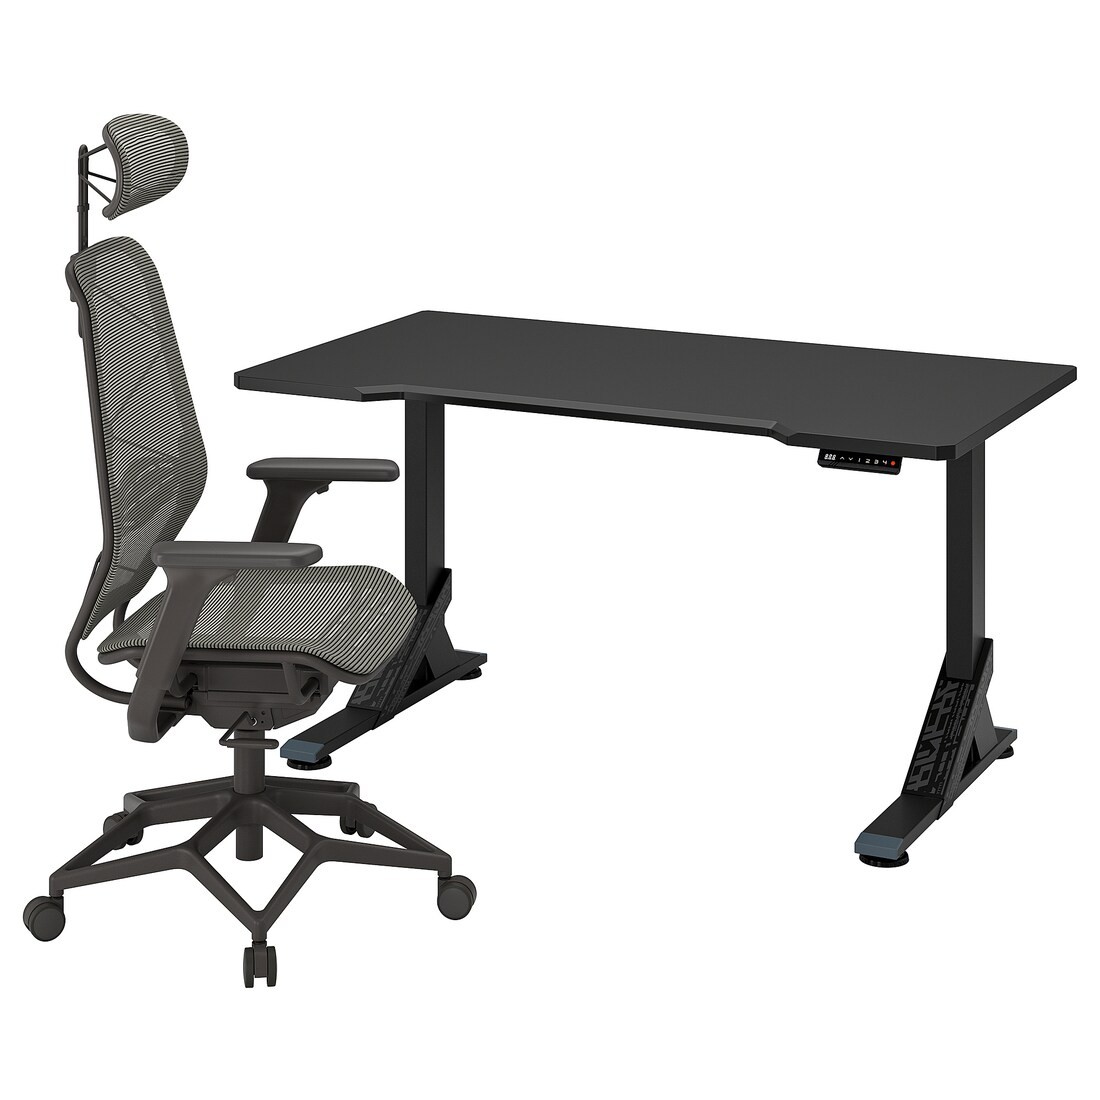 UPPSPEL / STYRSPEL Геймерский стол и стул, черный / серый, 140x80 см